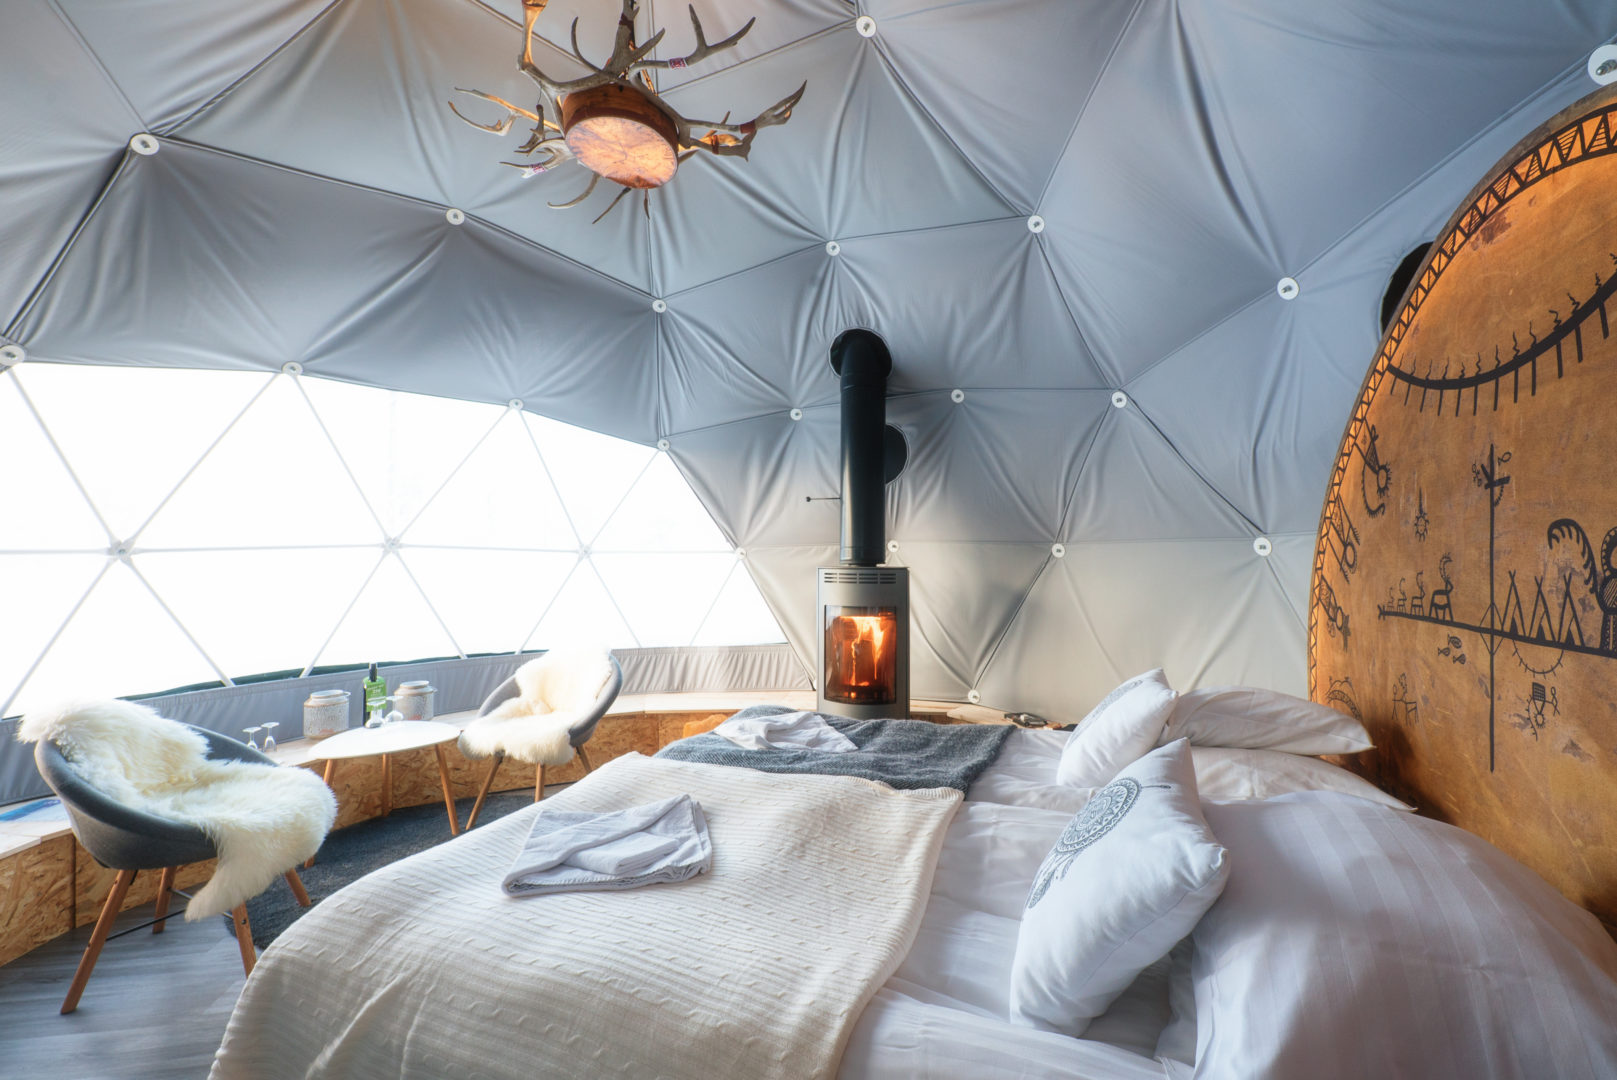 Chambre dans un igloo hôtel de neige Laponie finlandaise